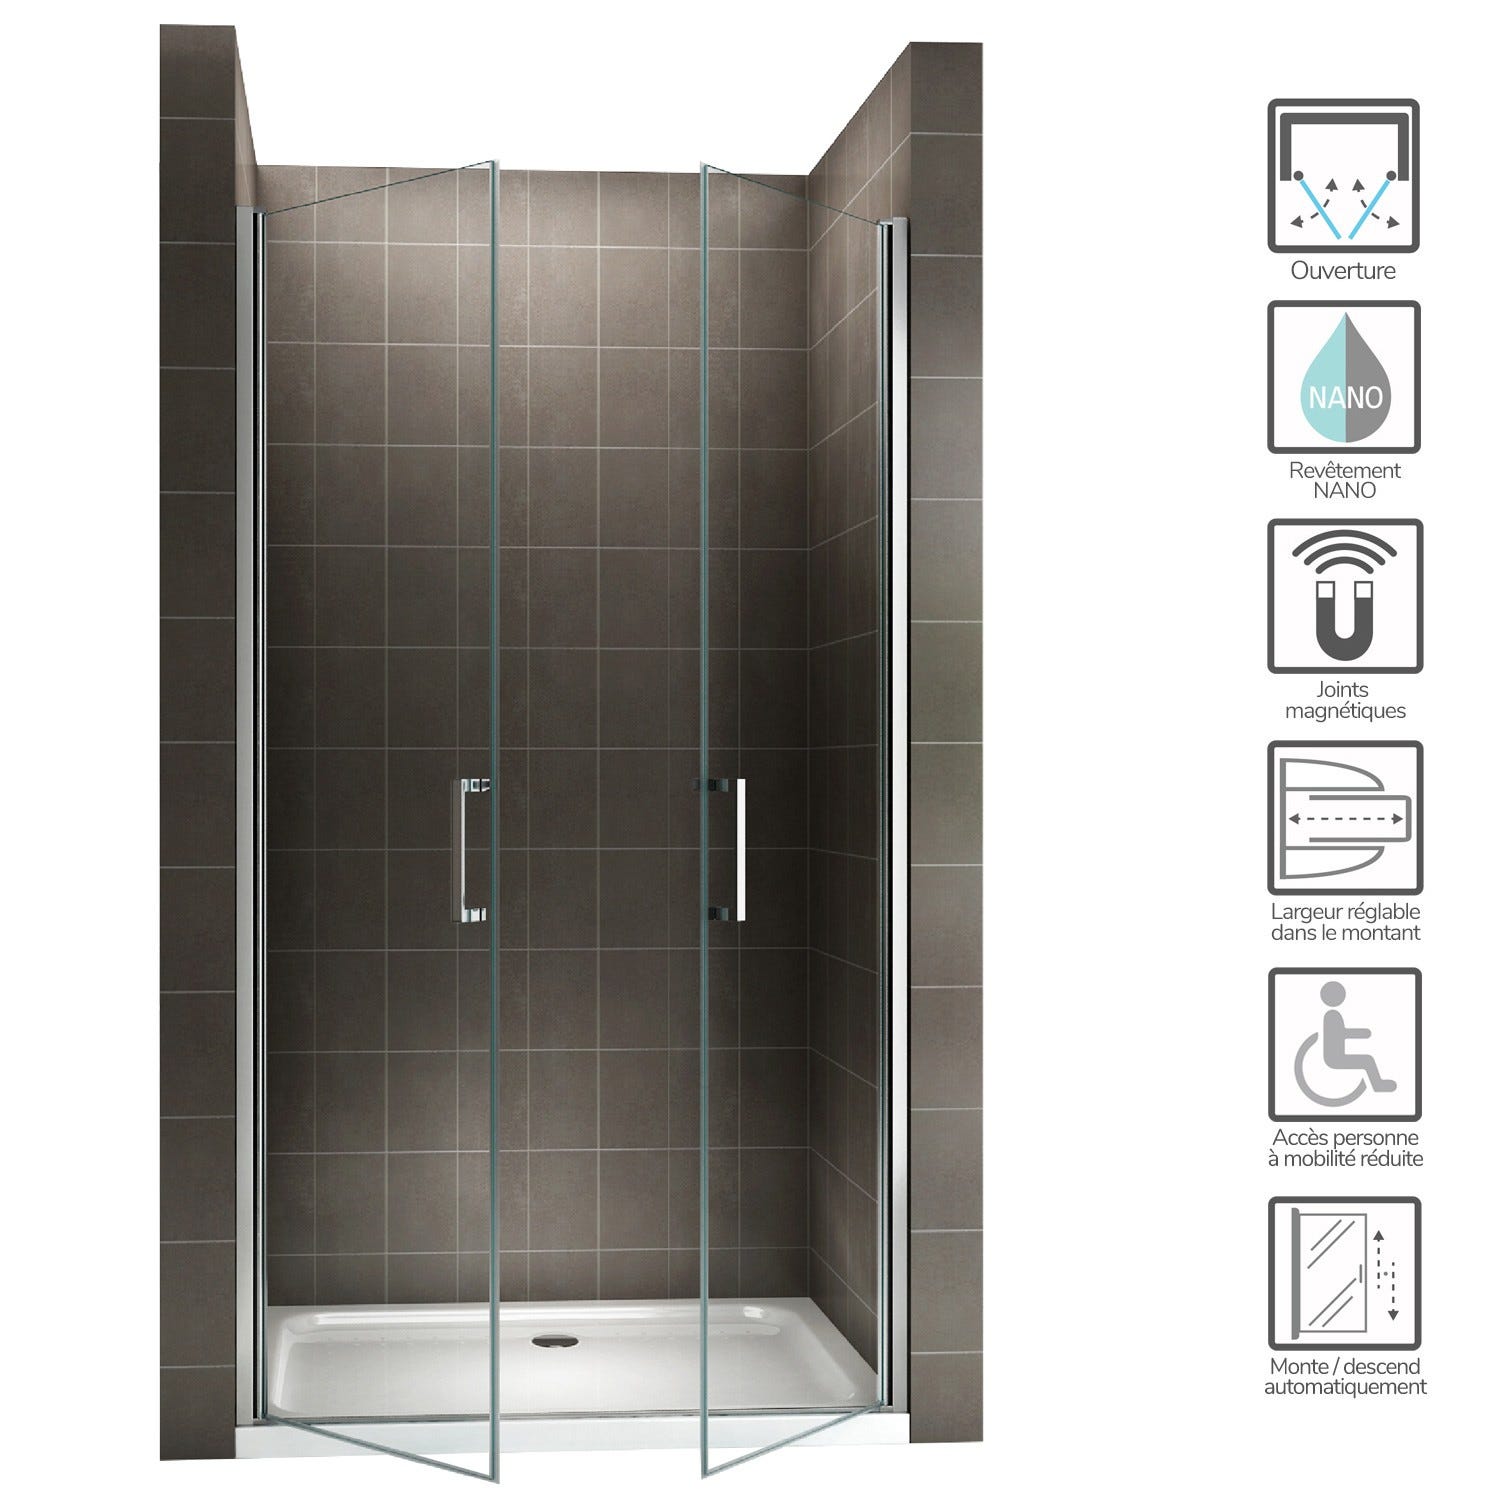 KAYA Porte de douche H 180 largeur réglable 92 à 95 cm verre transparent 1